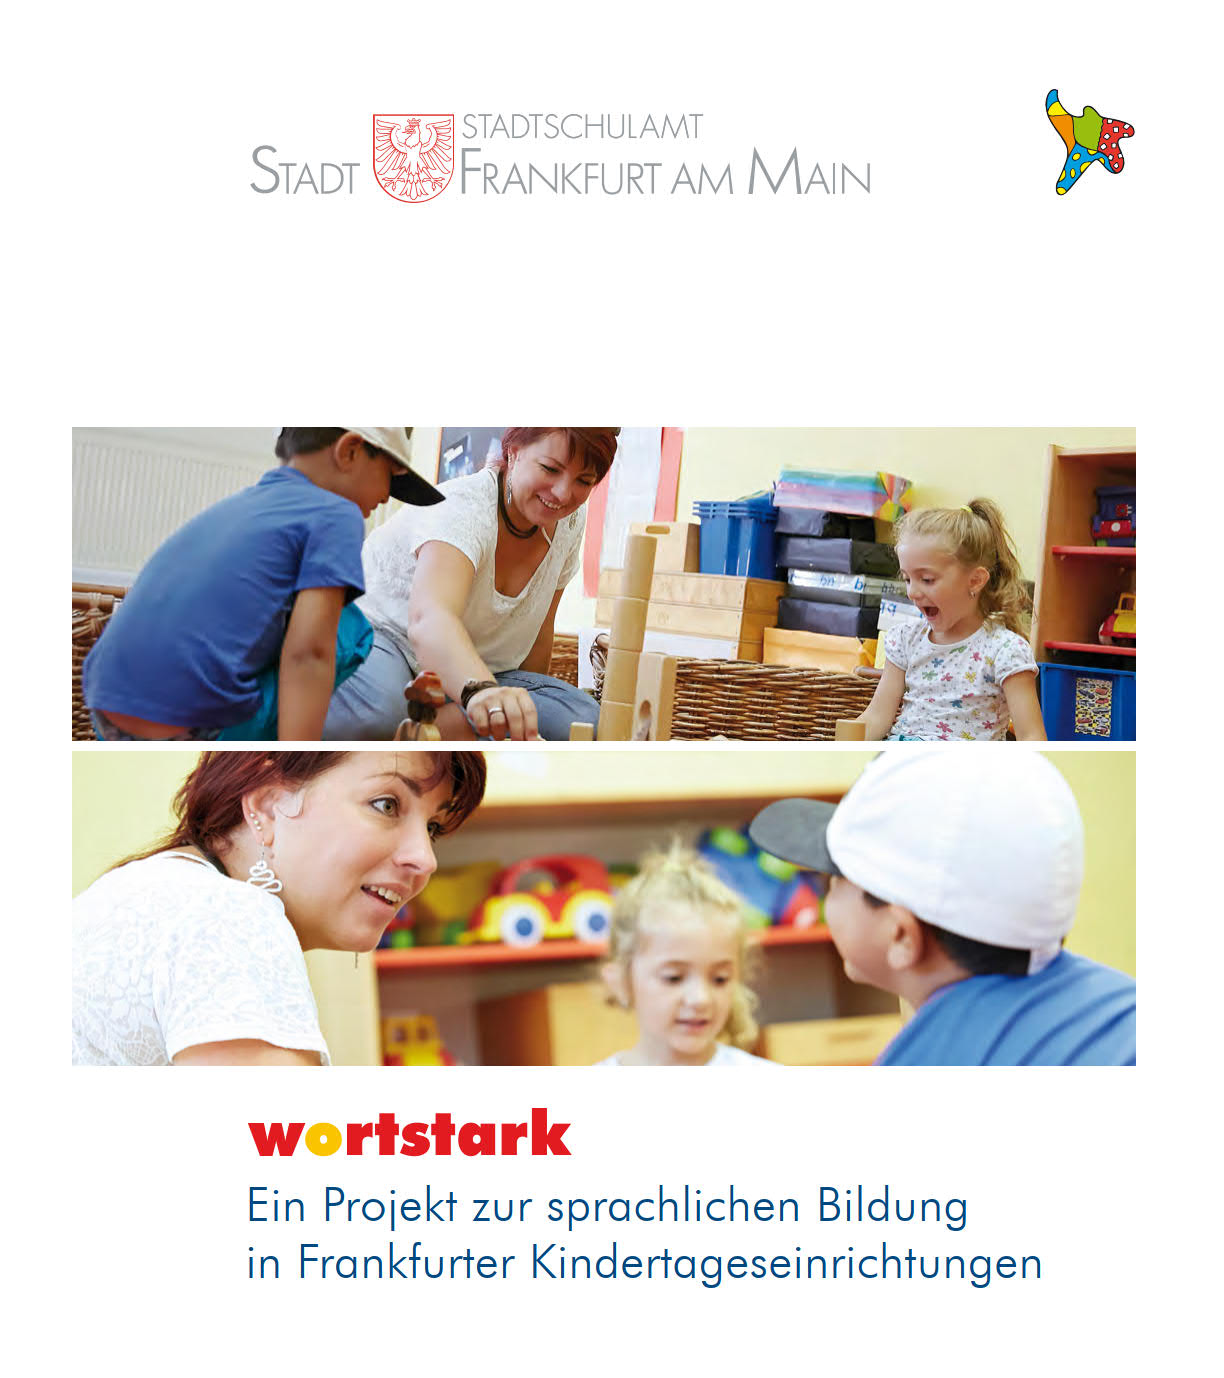 Titelbild der Wortstark Broschüre 2014